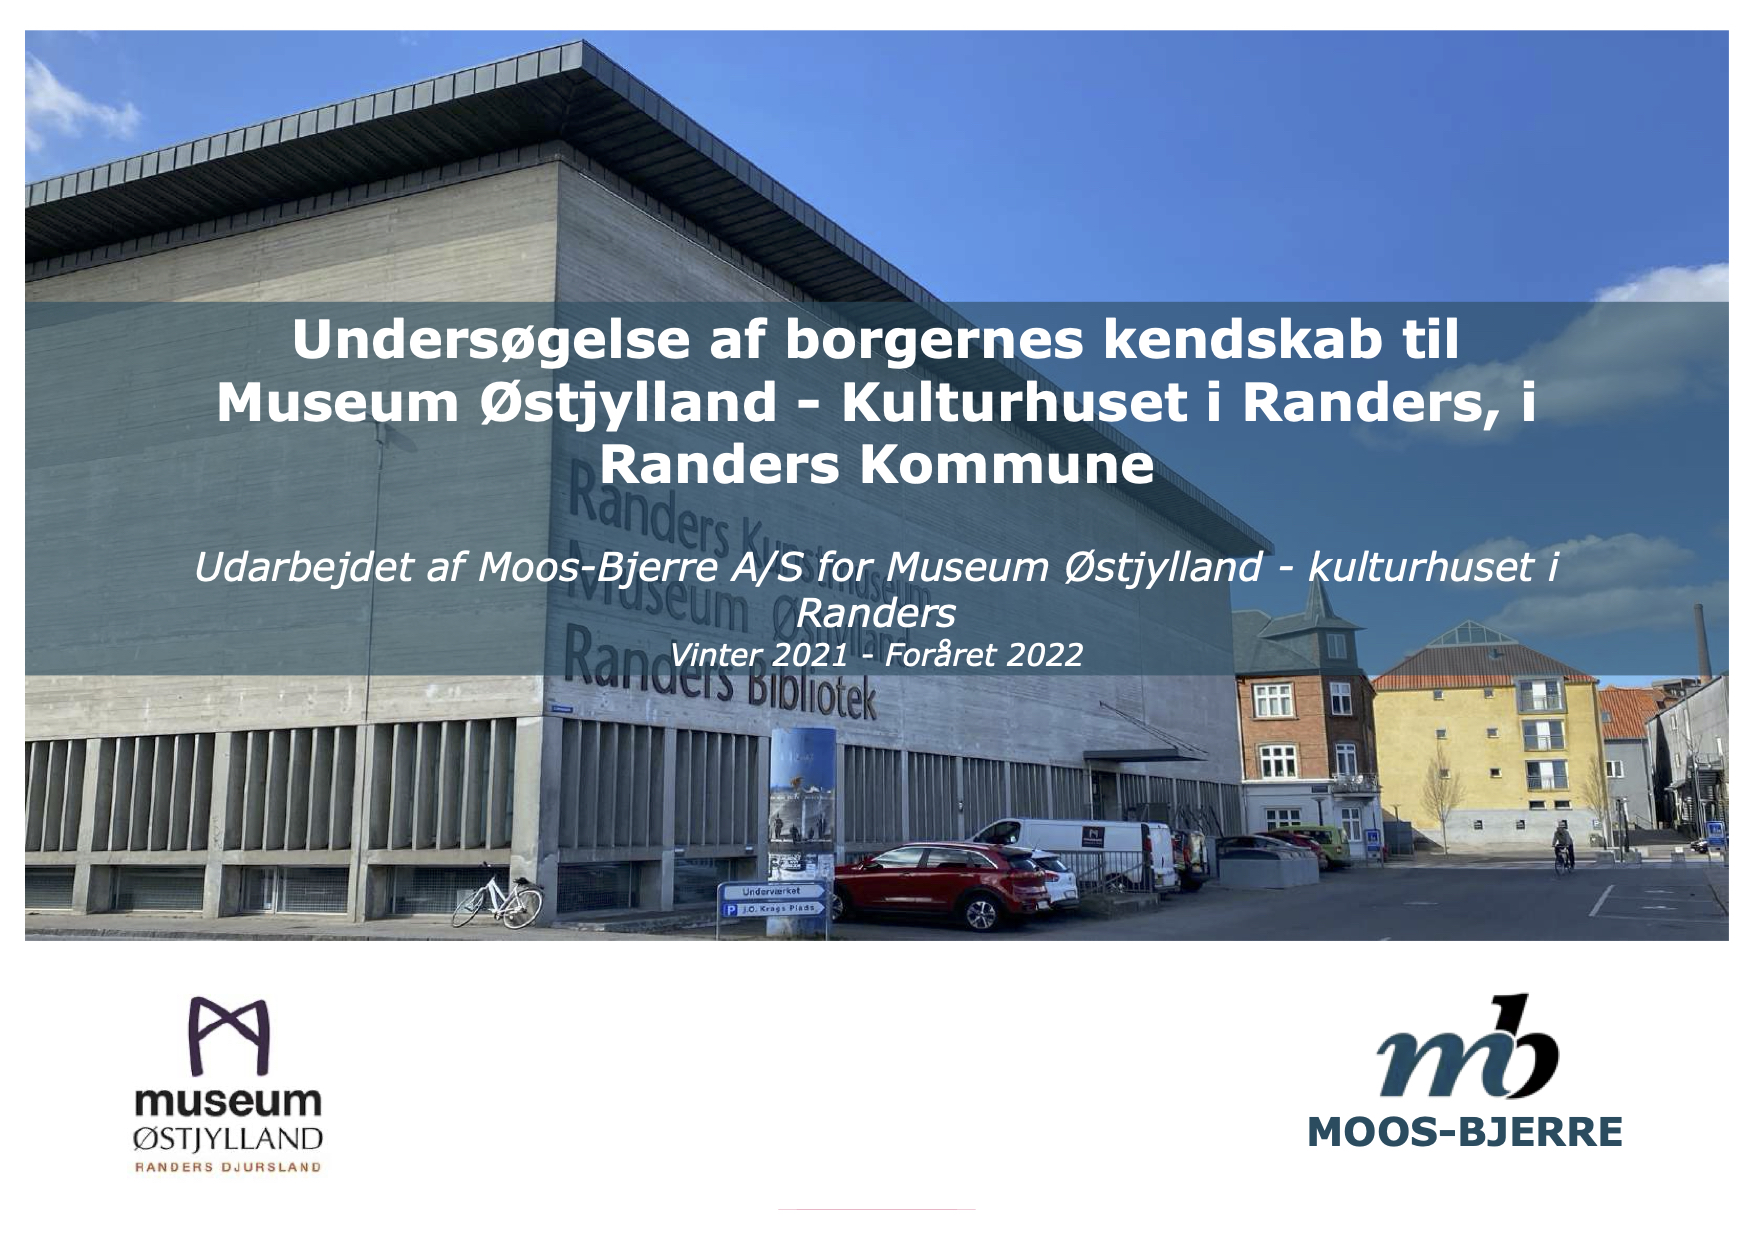 Undersøgelse museum østjylland